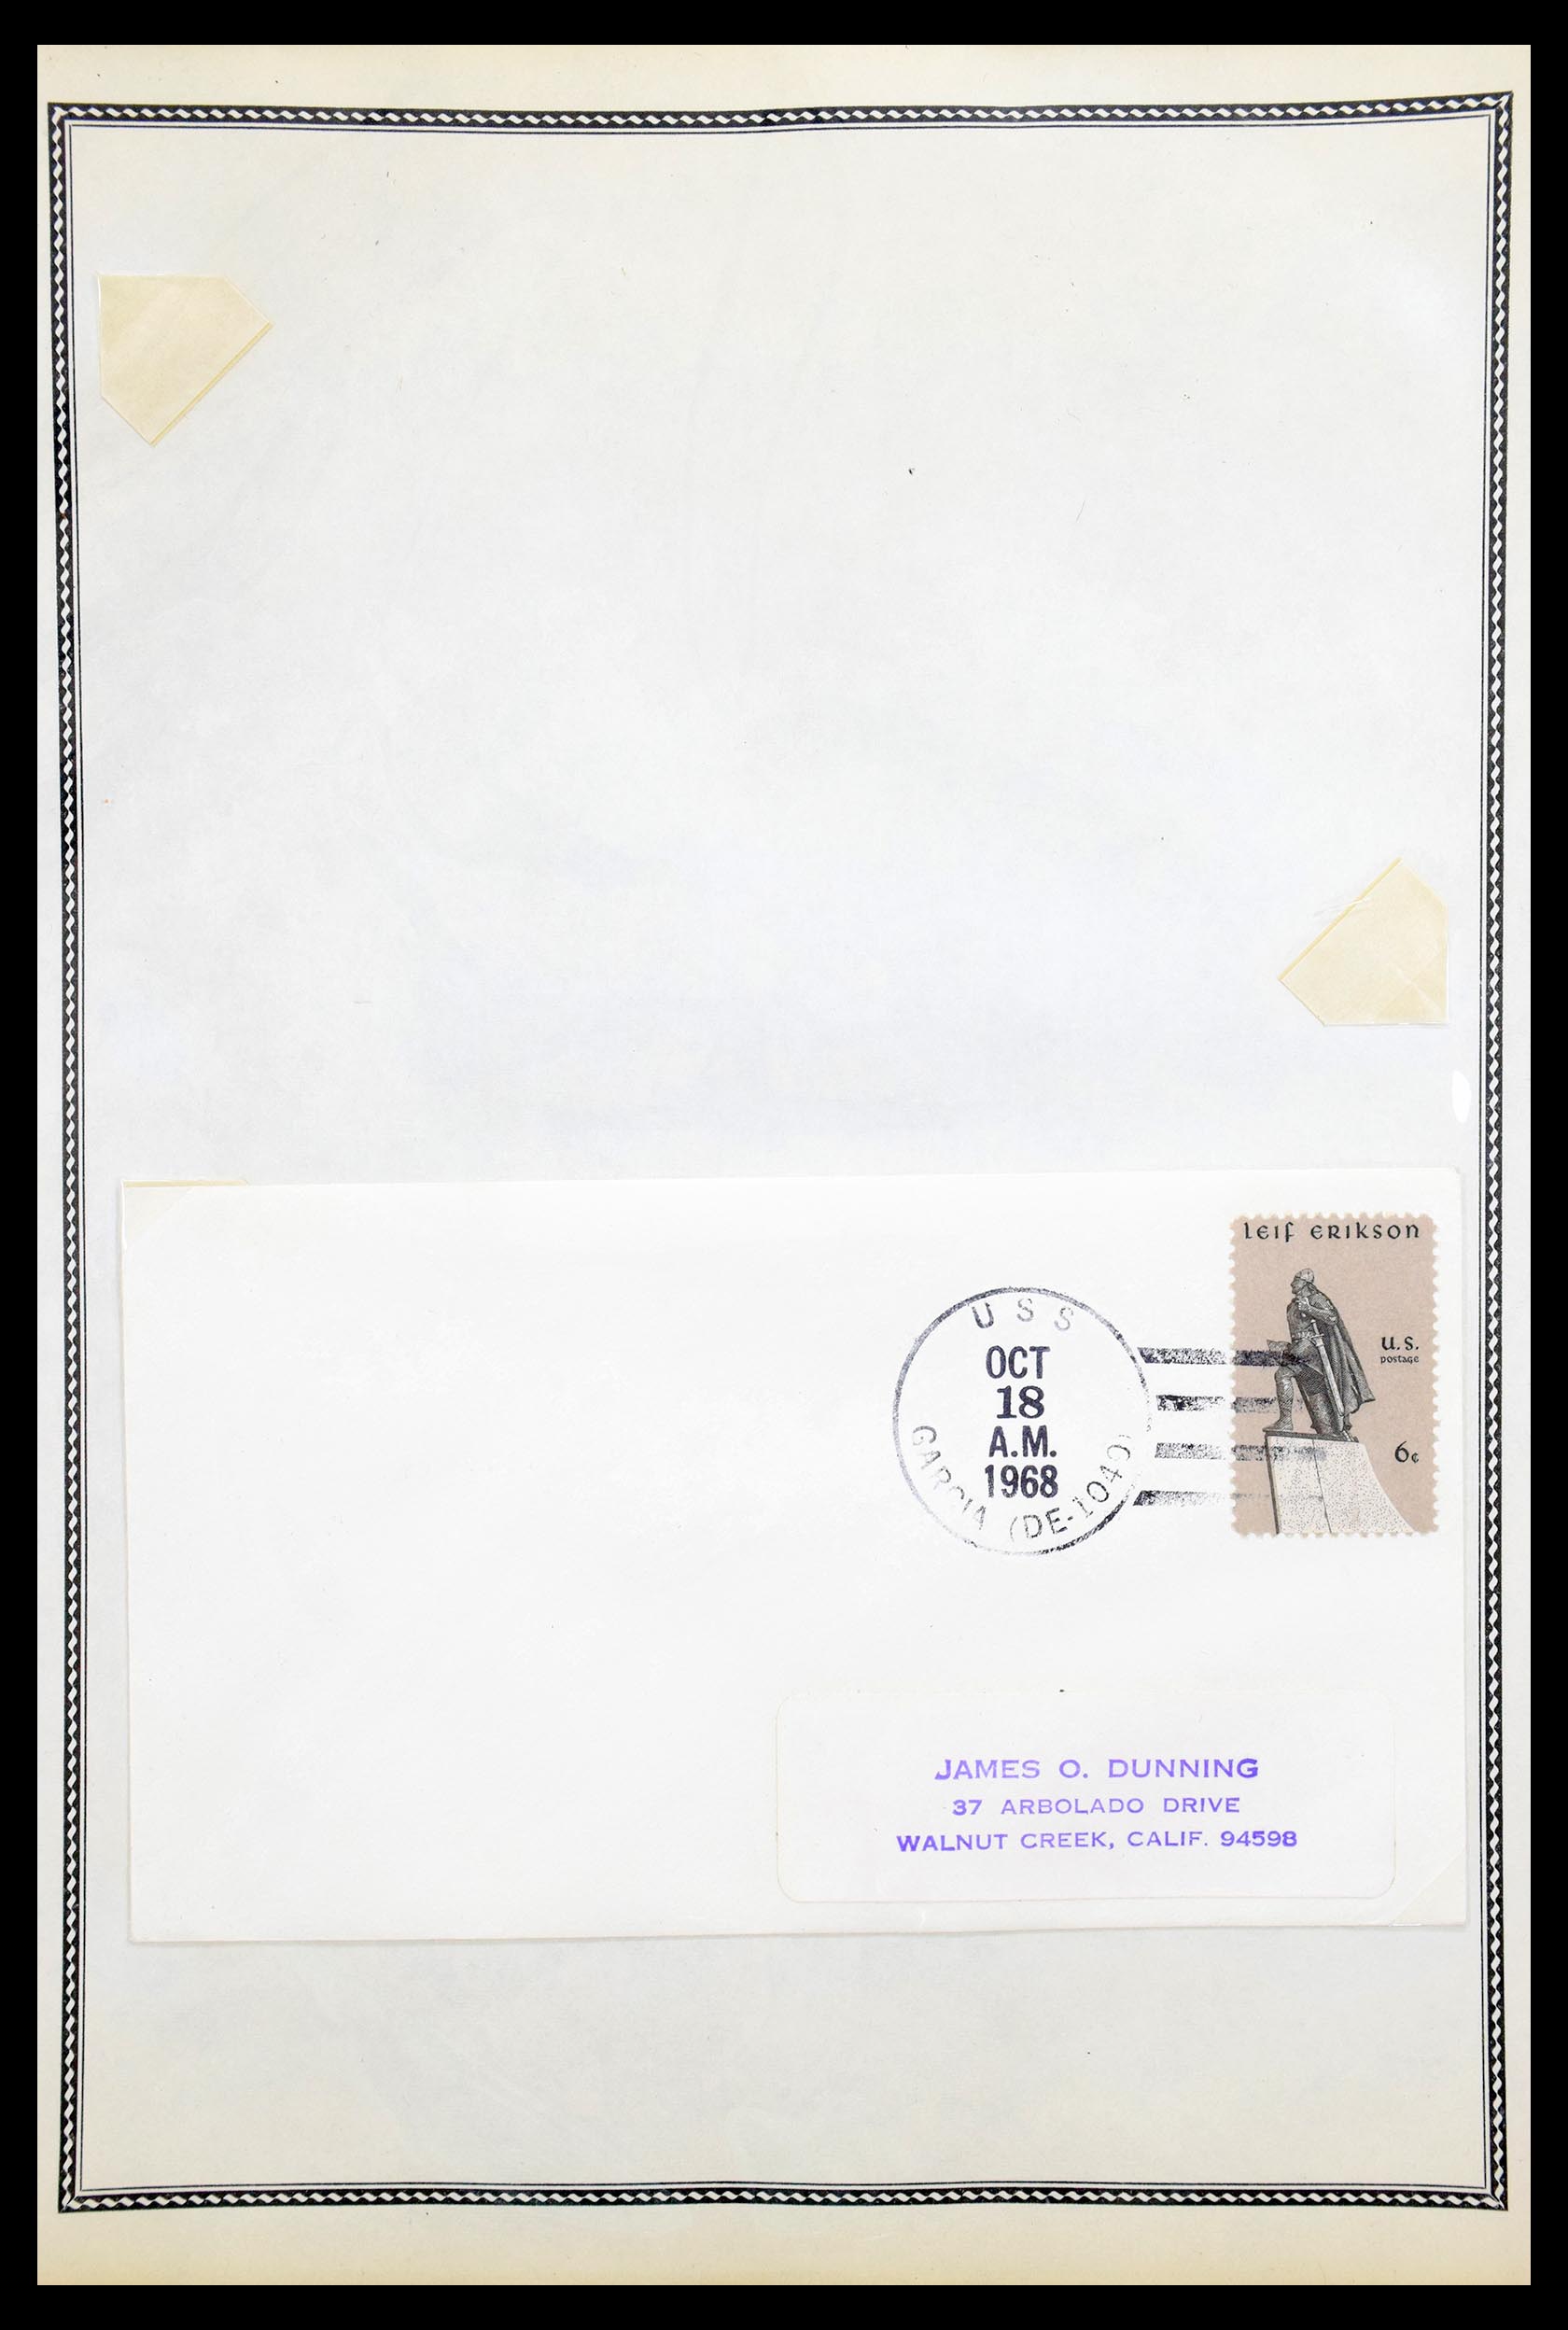 30341 079 - 30341 USA scheepspost brieven 1930-1970.